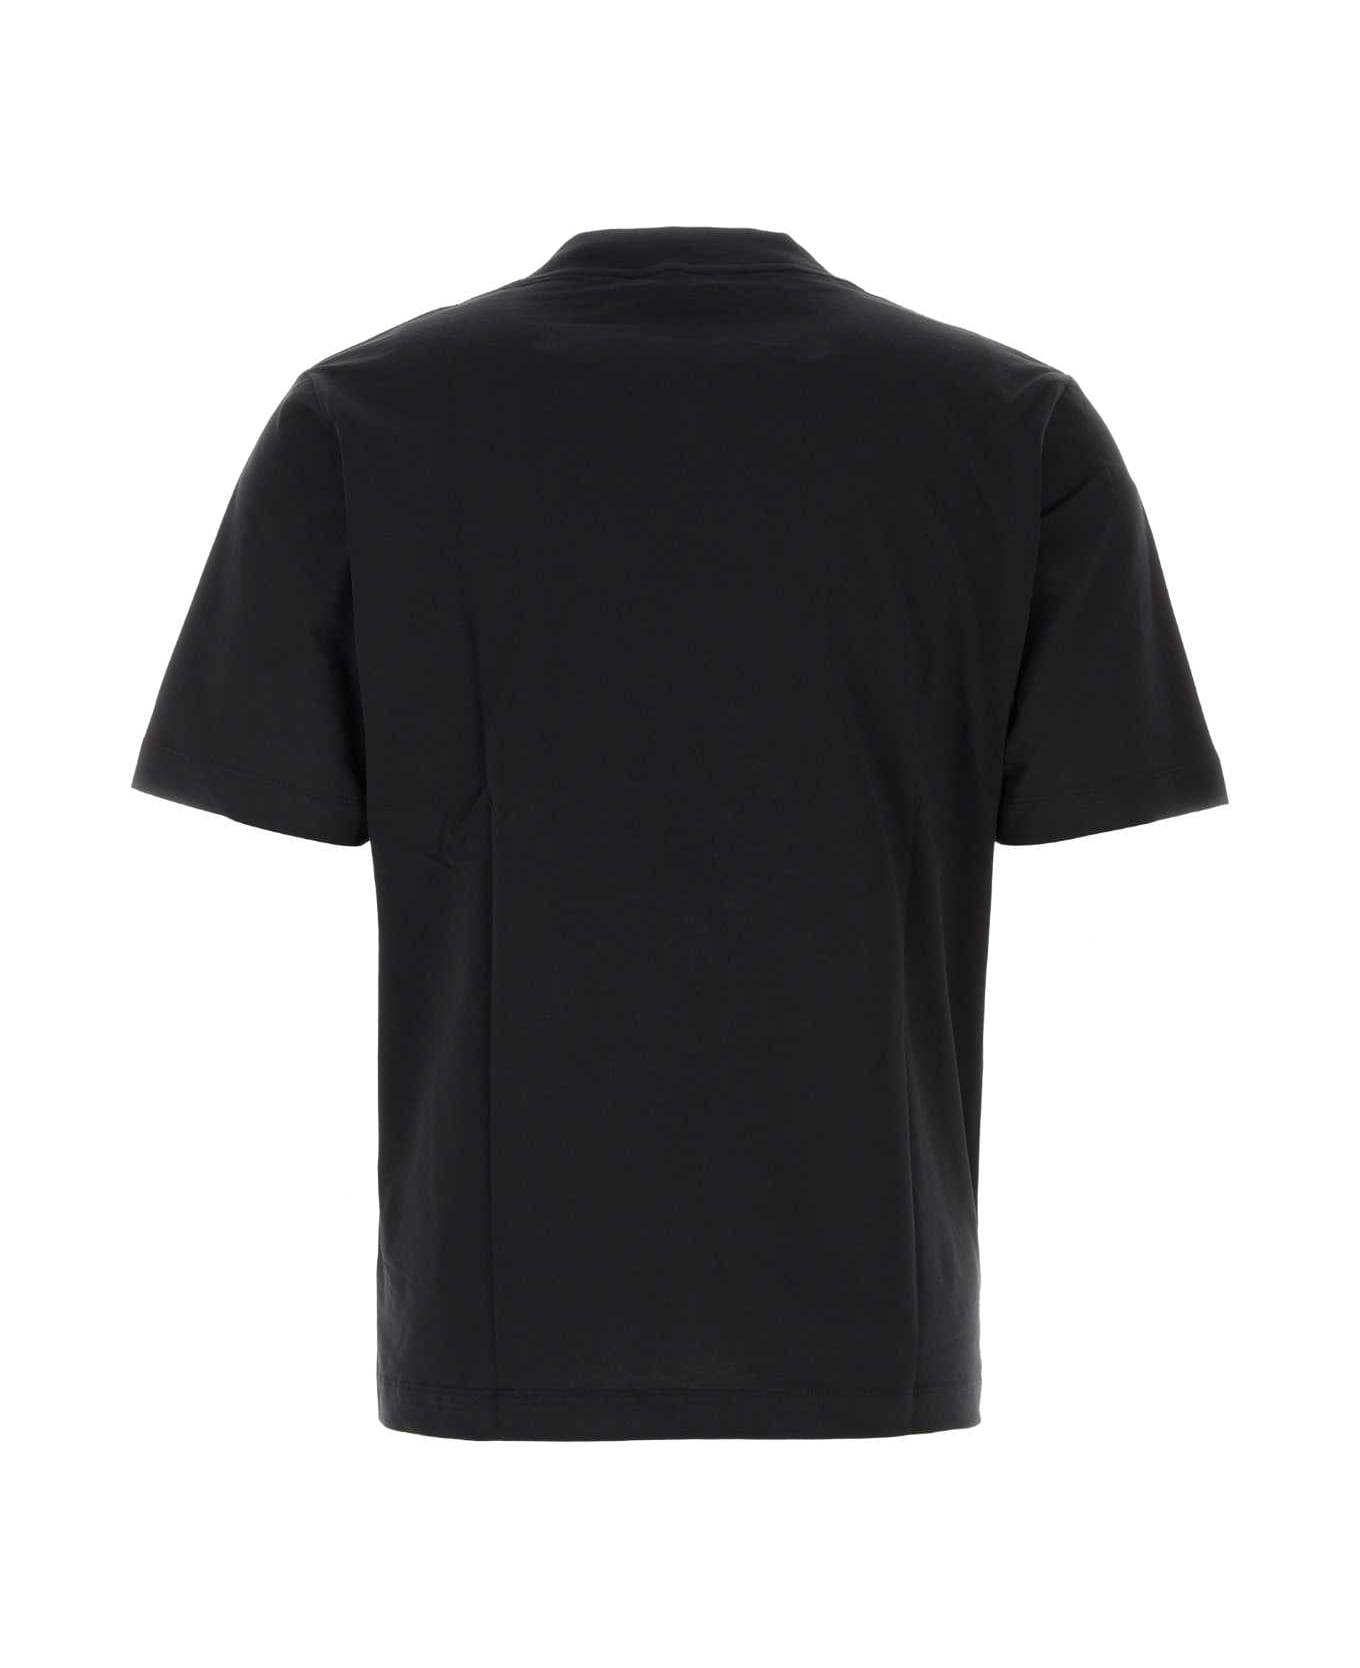 Études Black Cotton T-shirt - BLACK